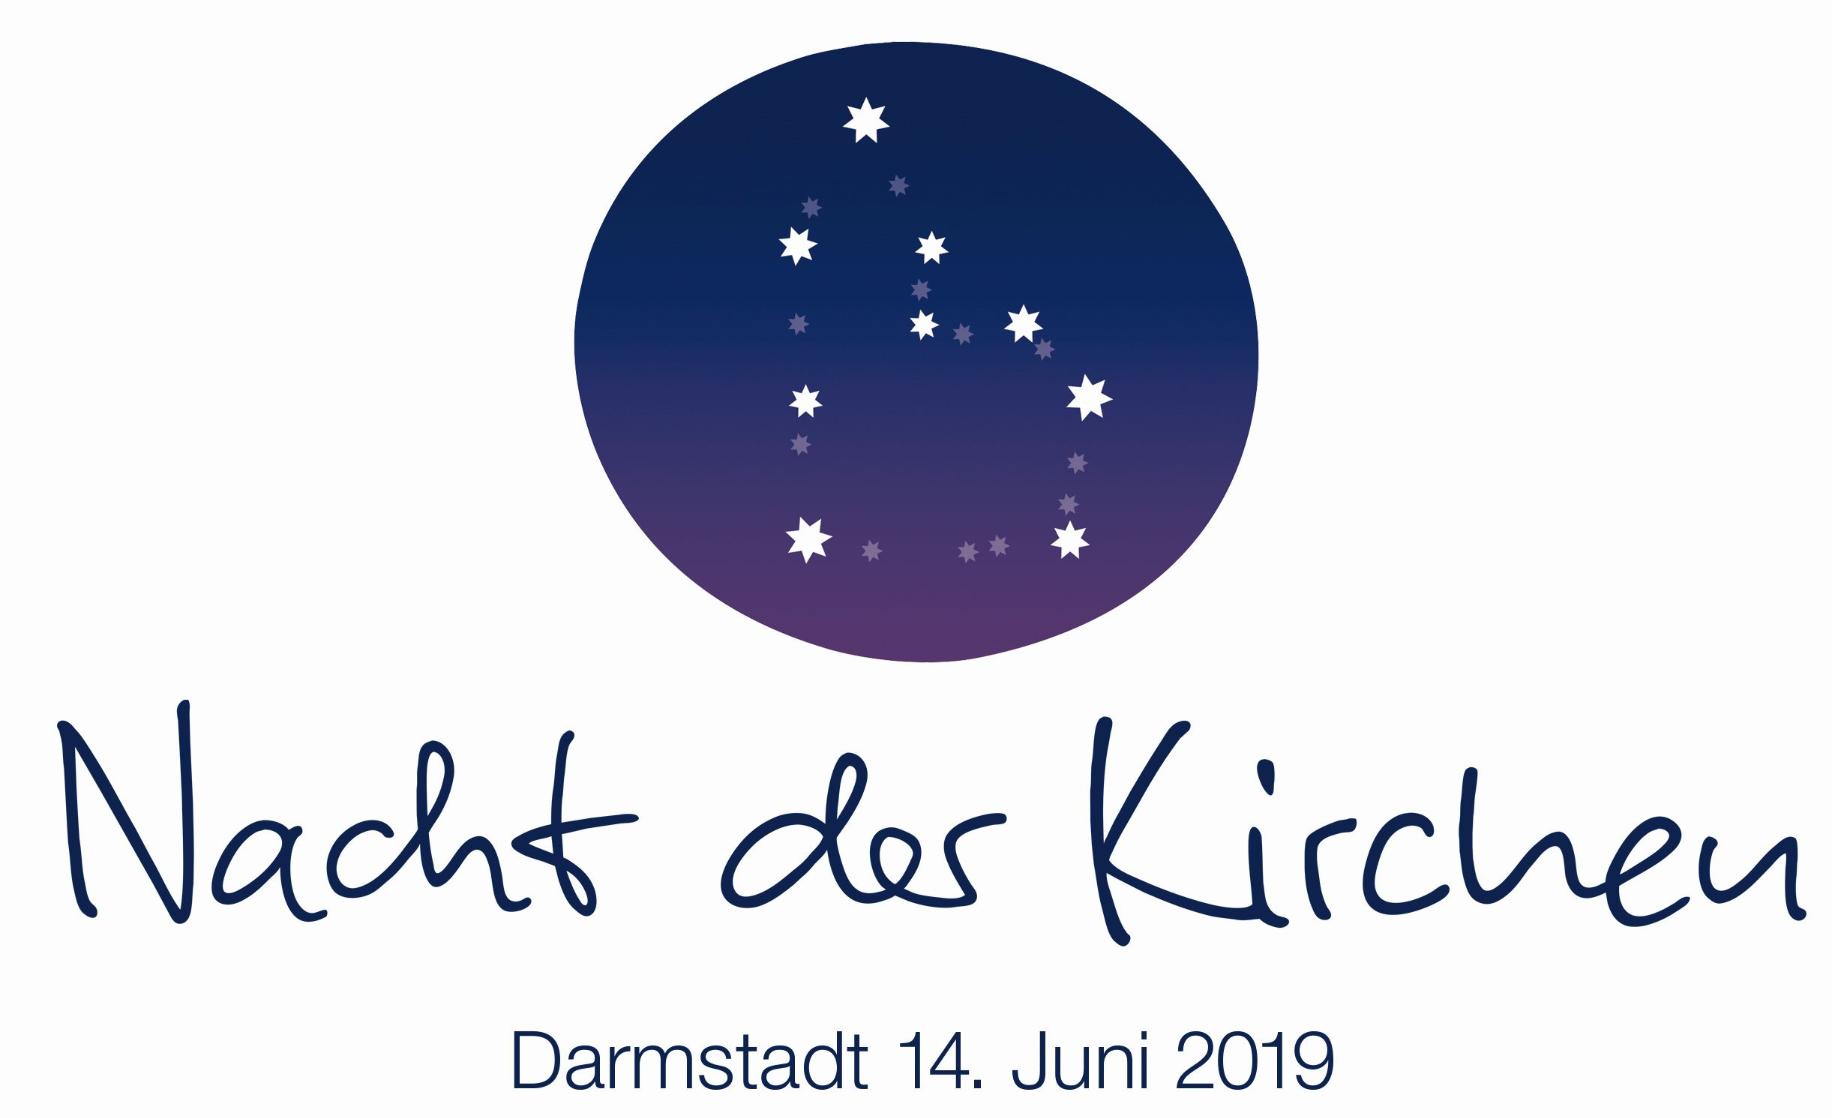 Nacht-der-kirchen-2019